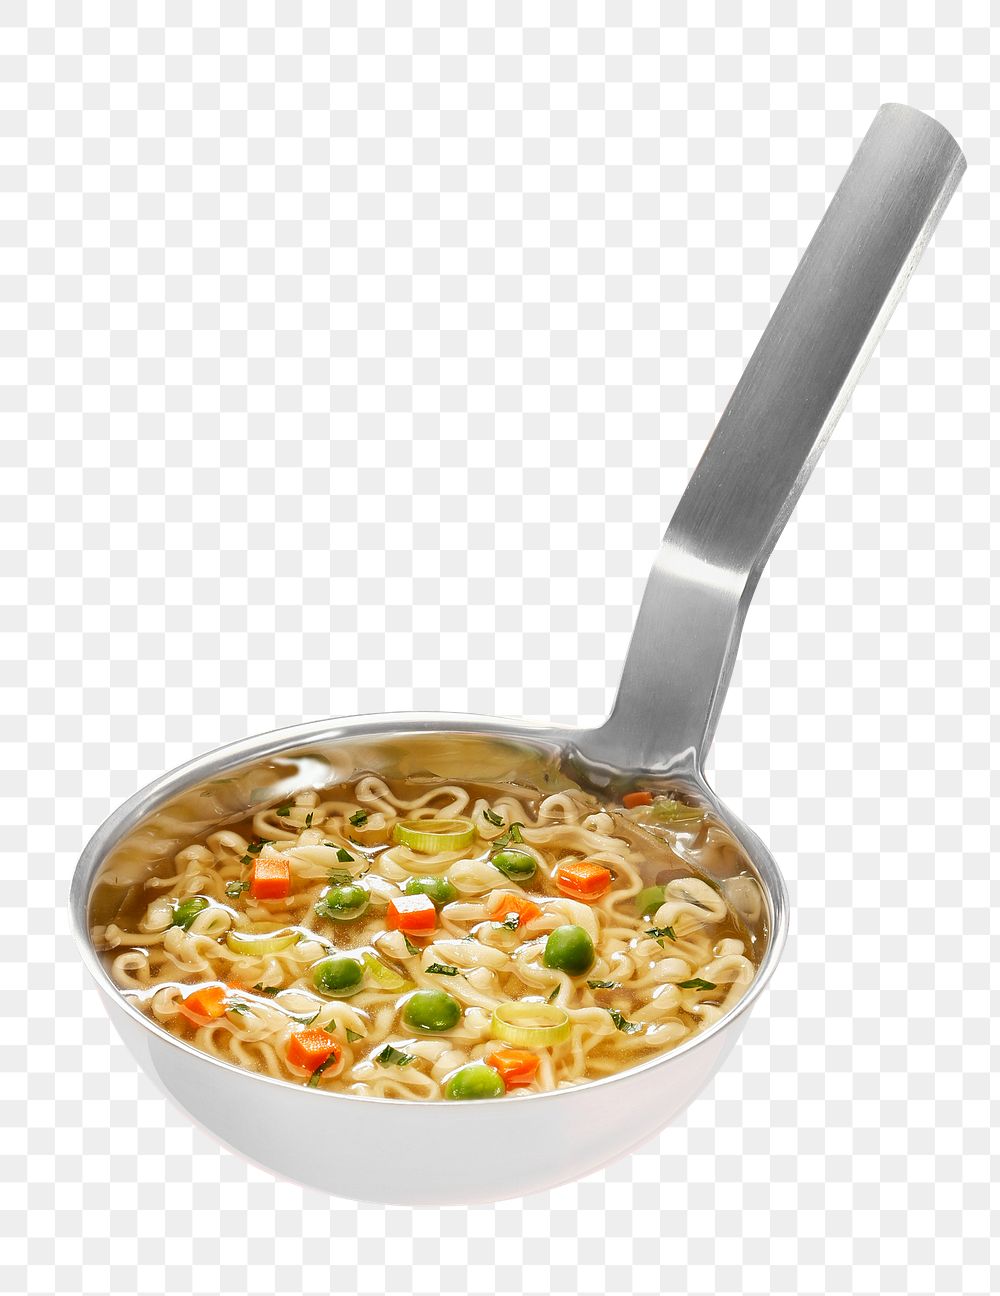 Vegetable soup png sticker, transparent background